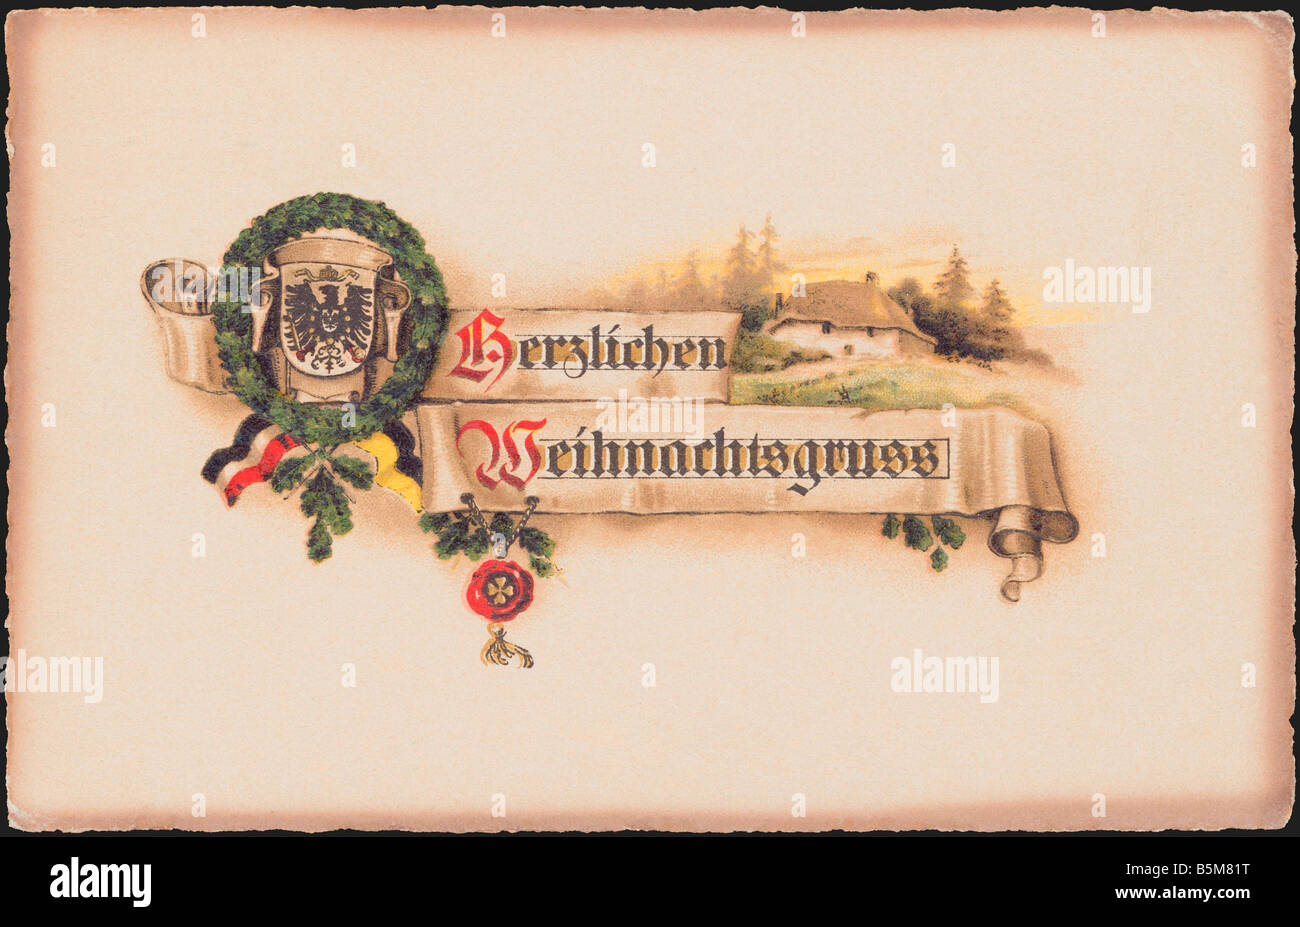 2 F15 P1 1916 1 Bannière avec couronne de chêne Postcard Cartes Postales de Noël Herzlichen Baner Weihnachtsgruss avec couronne de chêne reichs eagl Banque D'Images